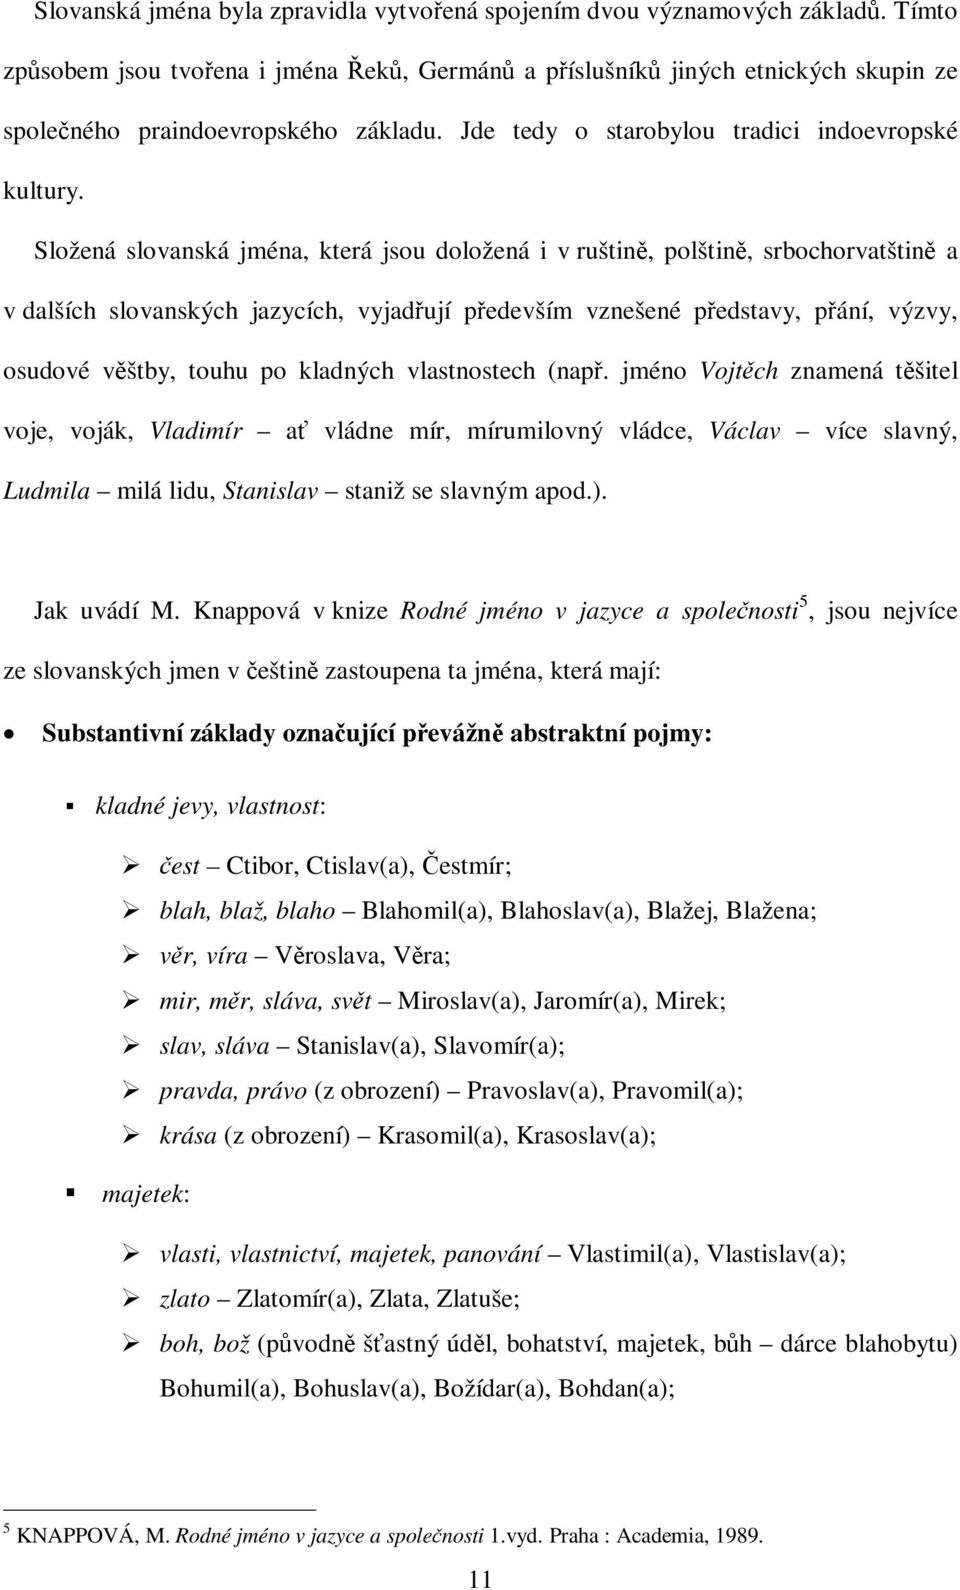 Složená slovanská jména, která jsou doložená i v ruštin, polštin, srbochorvatštin a v dalších slovanských jazycích, vyjadují pedevším vznešené pedstavy, pání, výzvy, osudové vštby, touhu po kladných